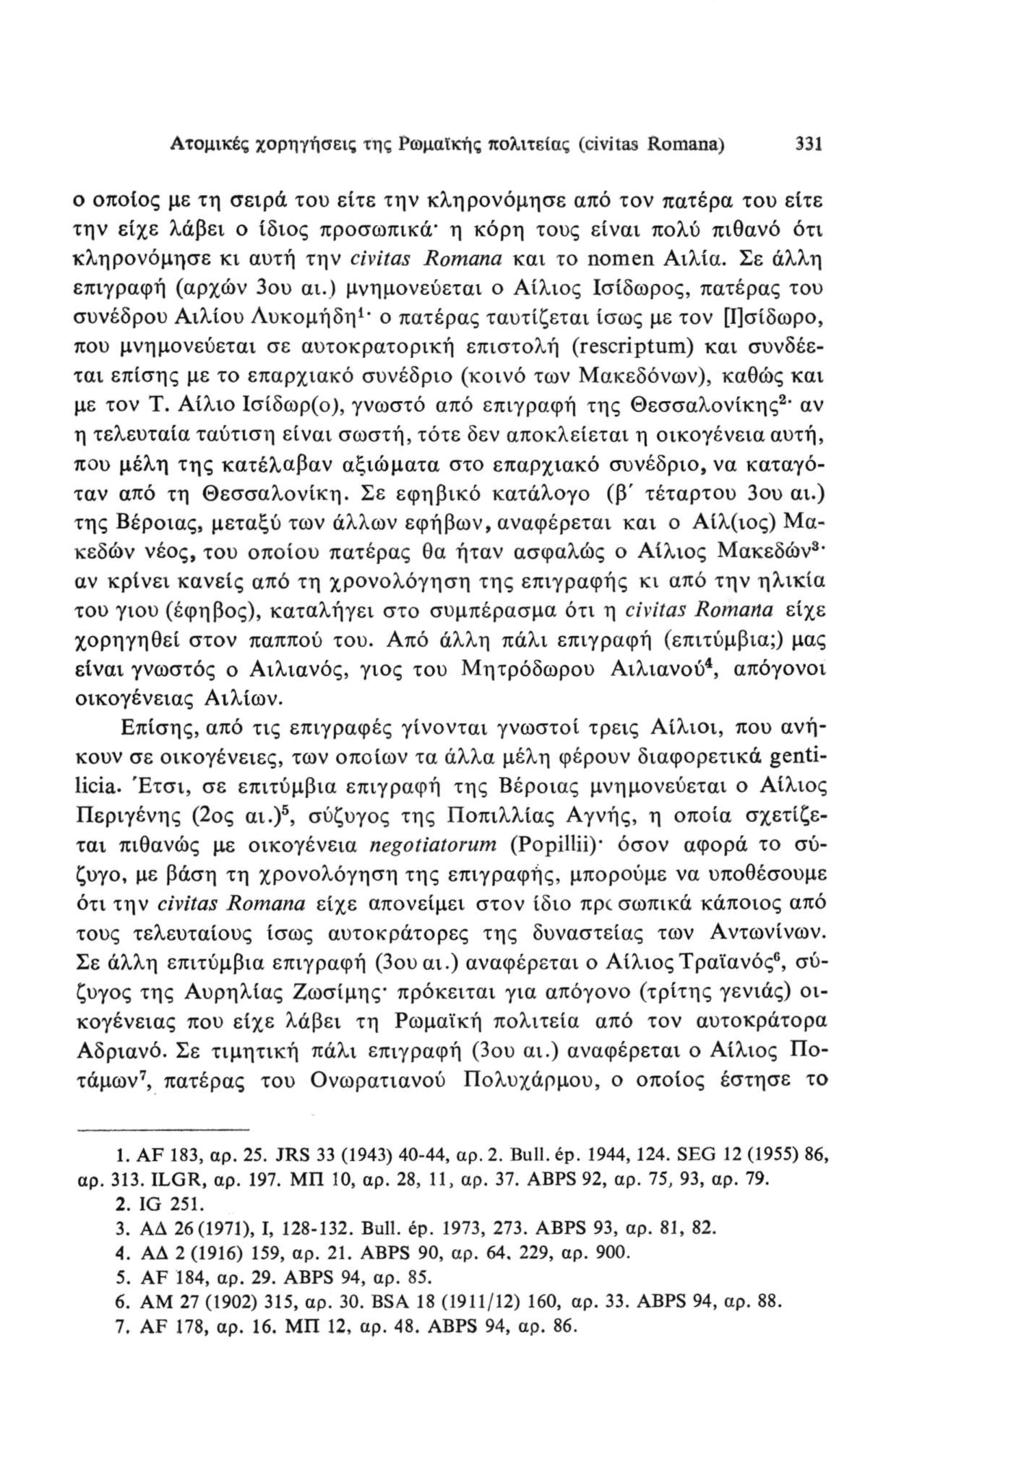 Ατομικές χορηγήσεις της Ρωμαϊκής πολιτείας (civitas Romana) 331 ο οποίος με τη σειρά του είτε την κληρονόμησε από τον πατέρα του είτε την είχε λάβει ο ίδιος προσωπικά- η κόρη τους είναι πολύ πιθανό